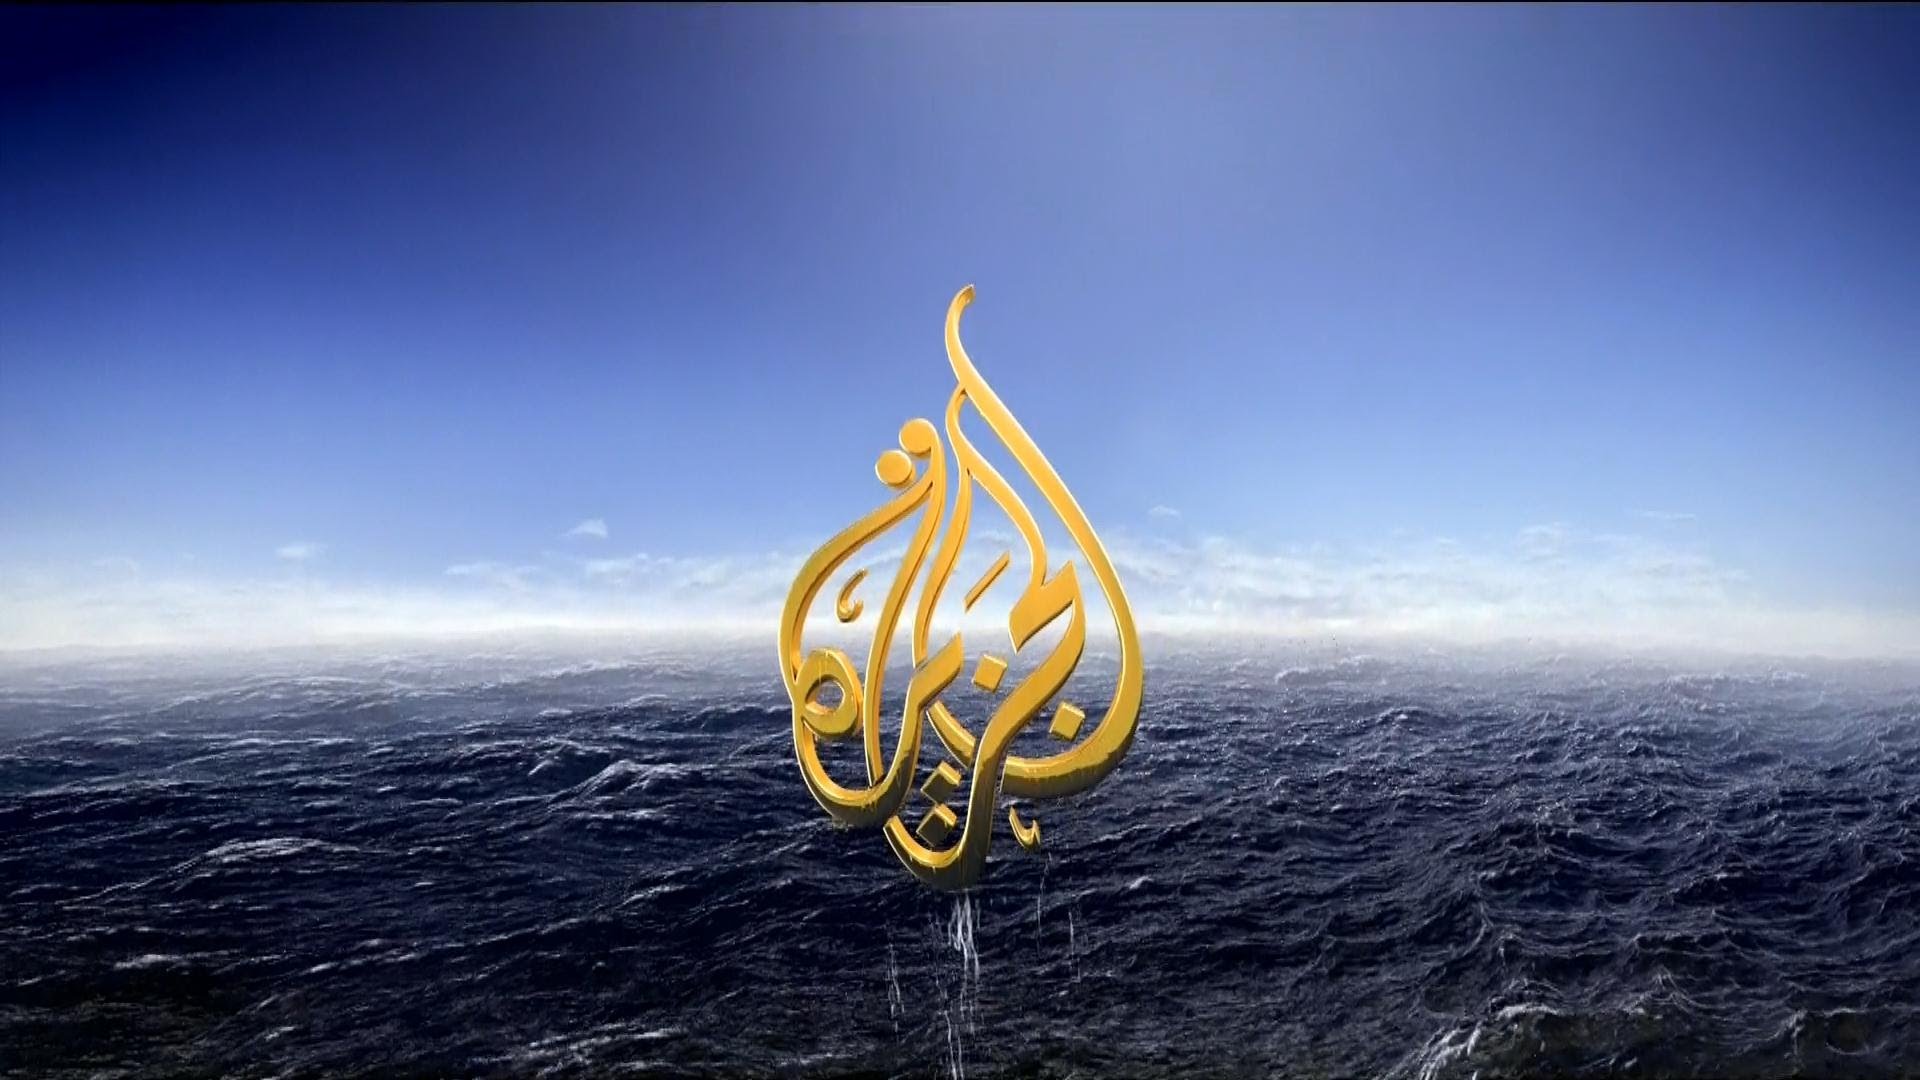 ثورة في برامج قناة «الجزيرة» وتوجه لوقف بث بعضها وإطلاق عناوين جديدة